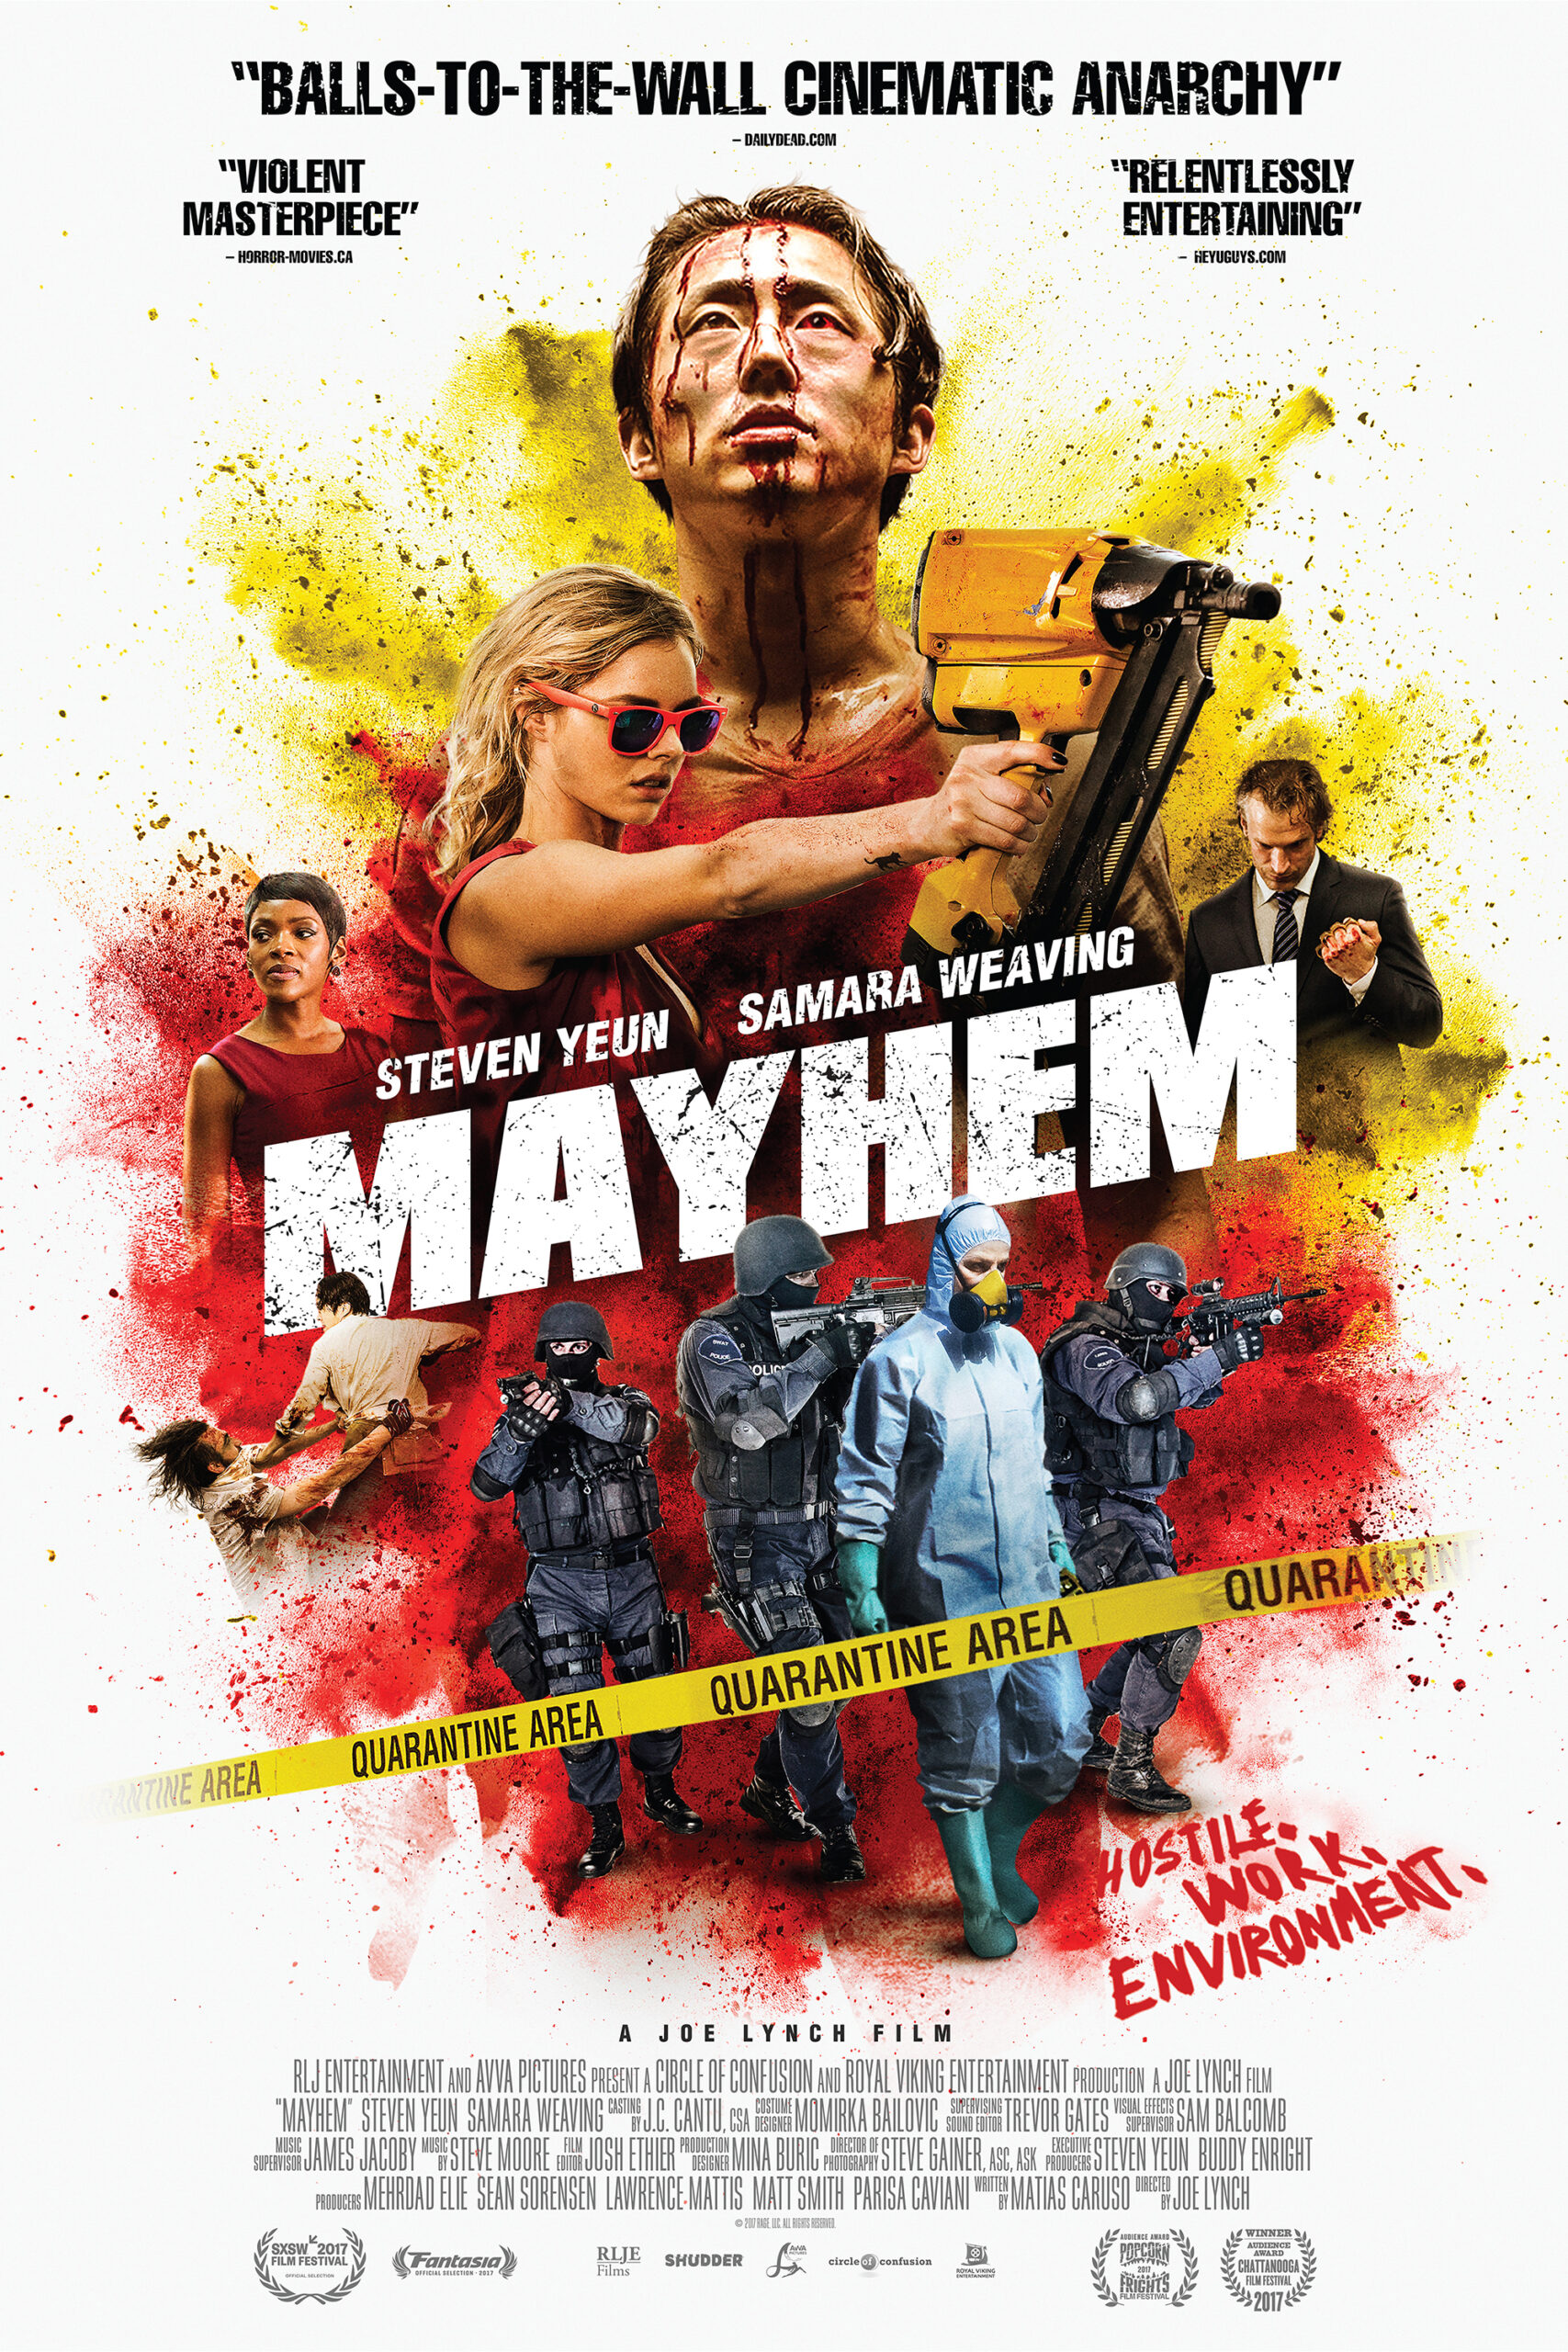 Mayhem (2017)